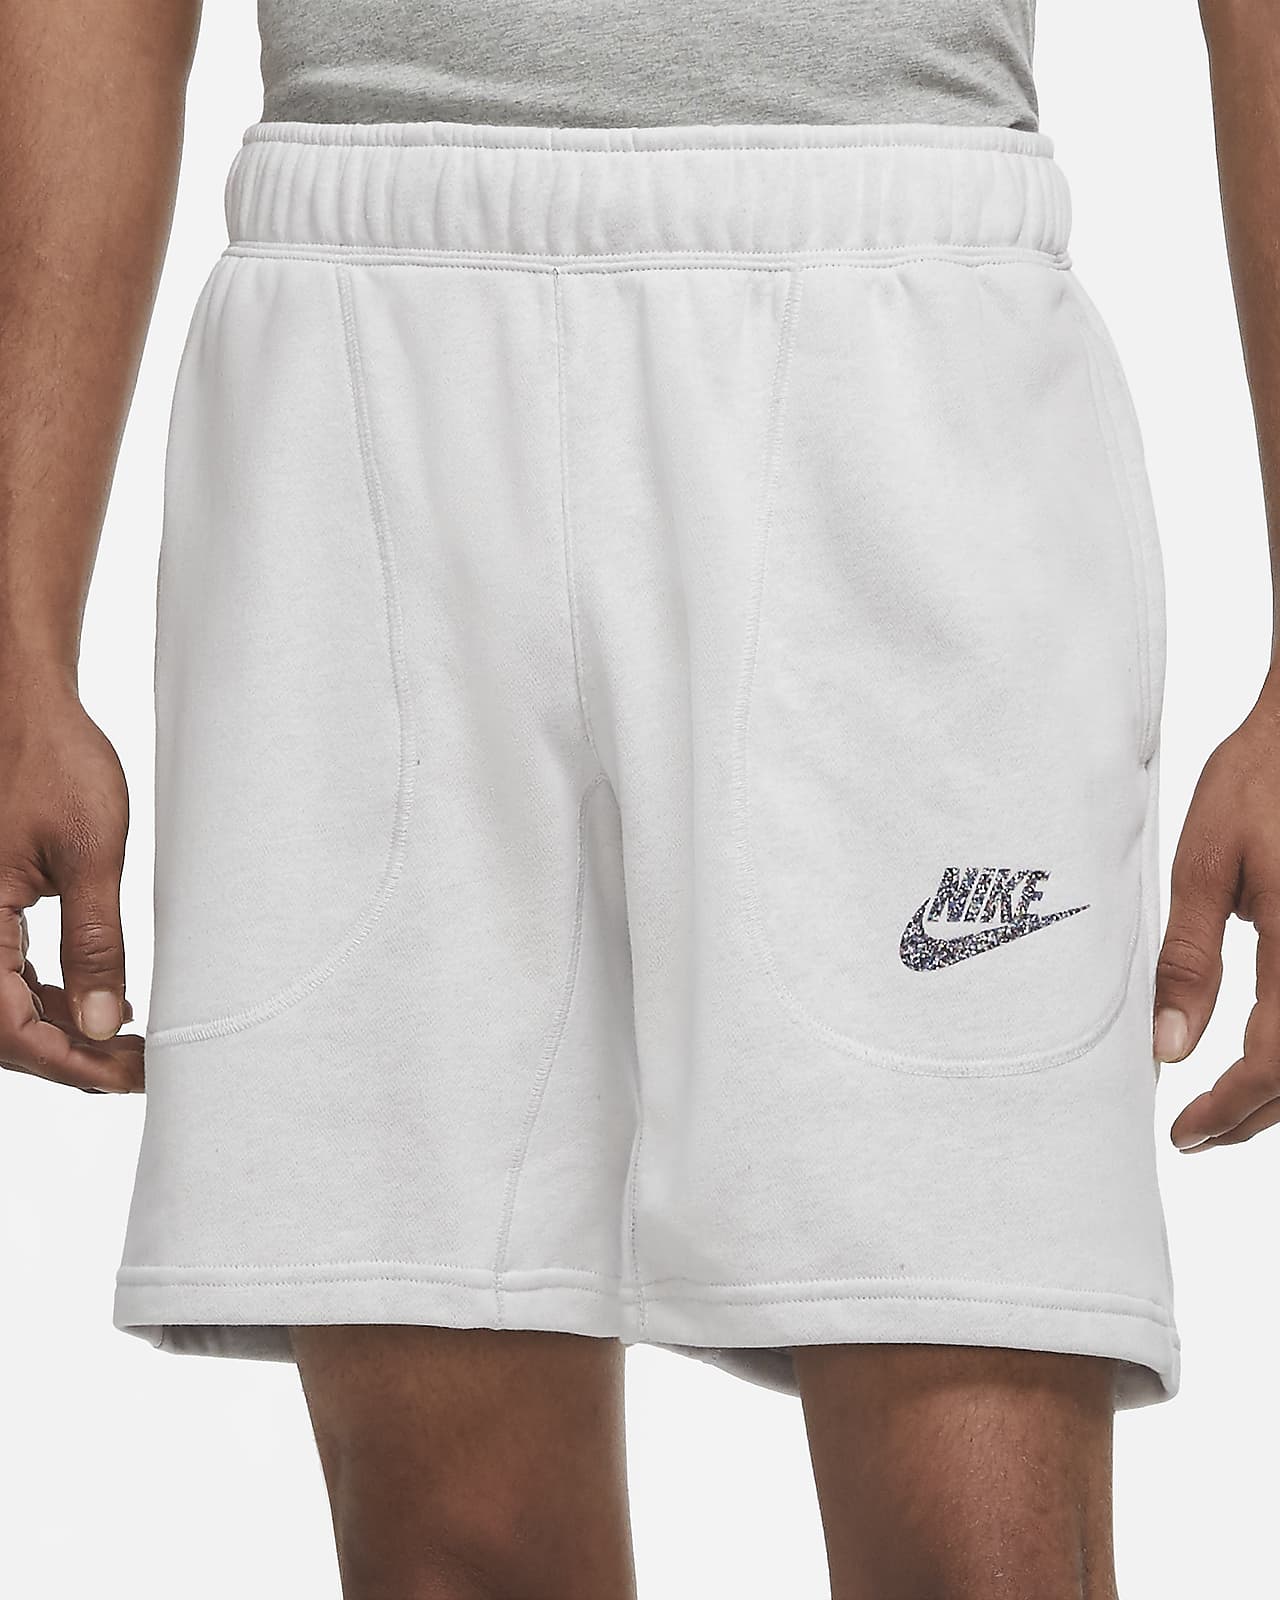 white cotton nike shorts